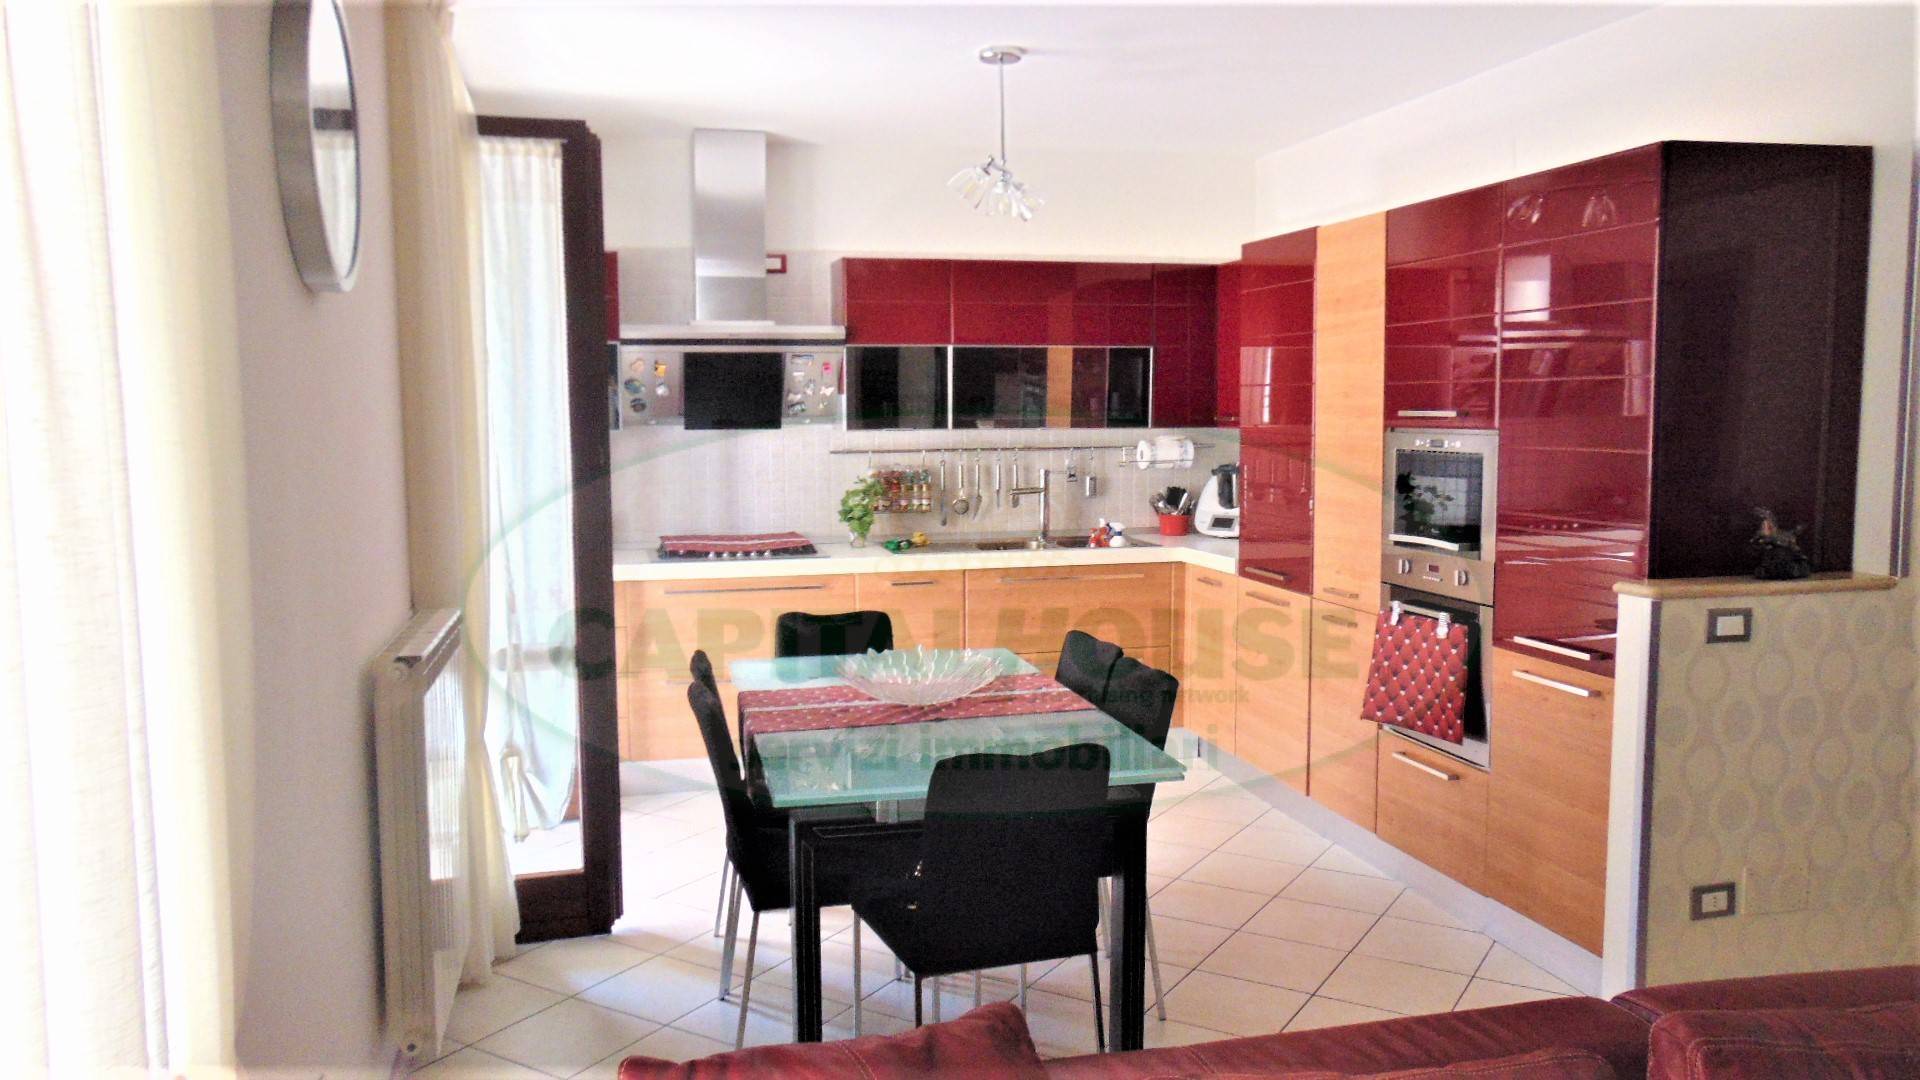 Appartamento in vendita a Sirignano, 4 locali, prezzo € 135.000 | CambioCasa.it